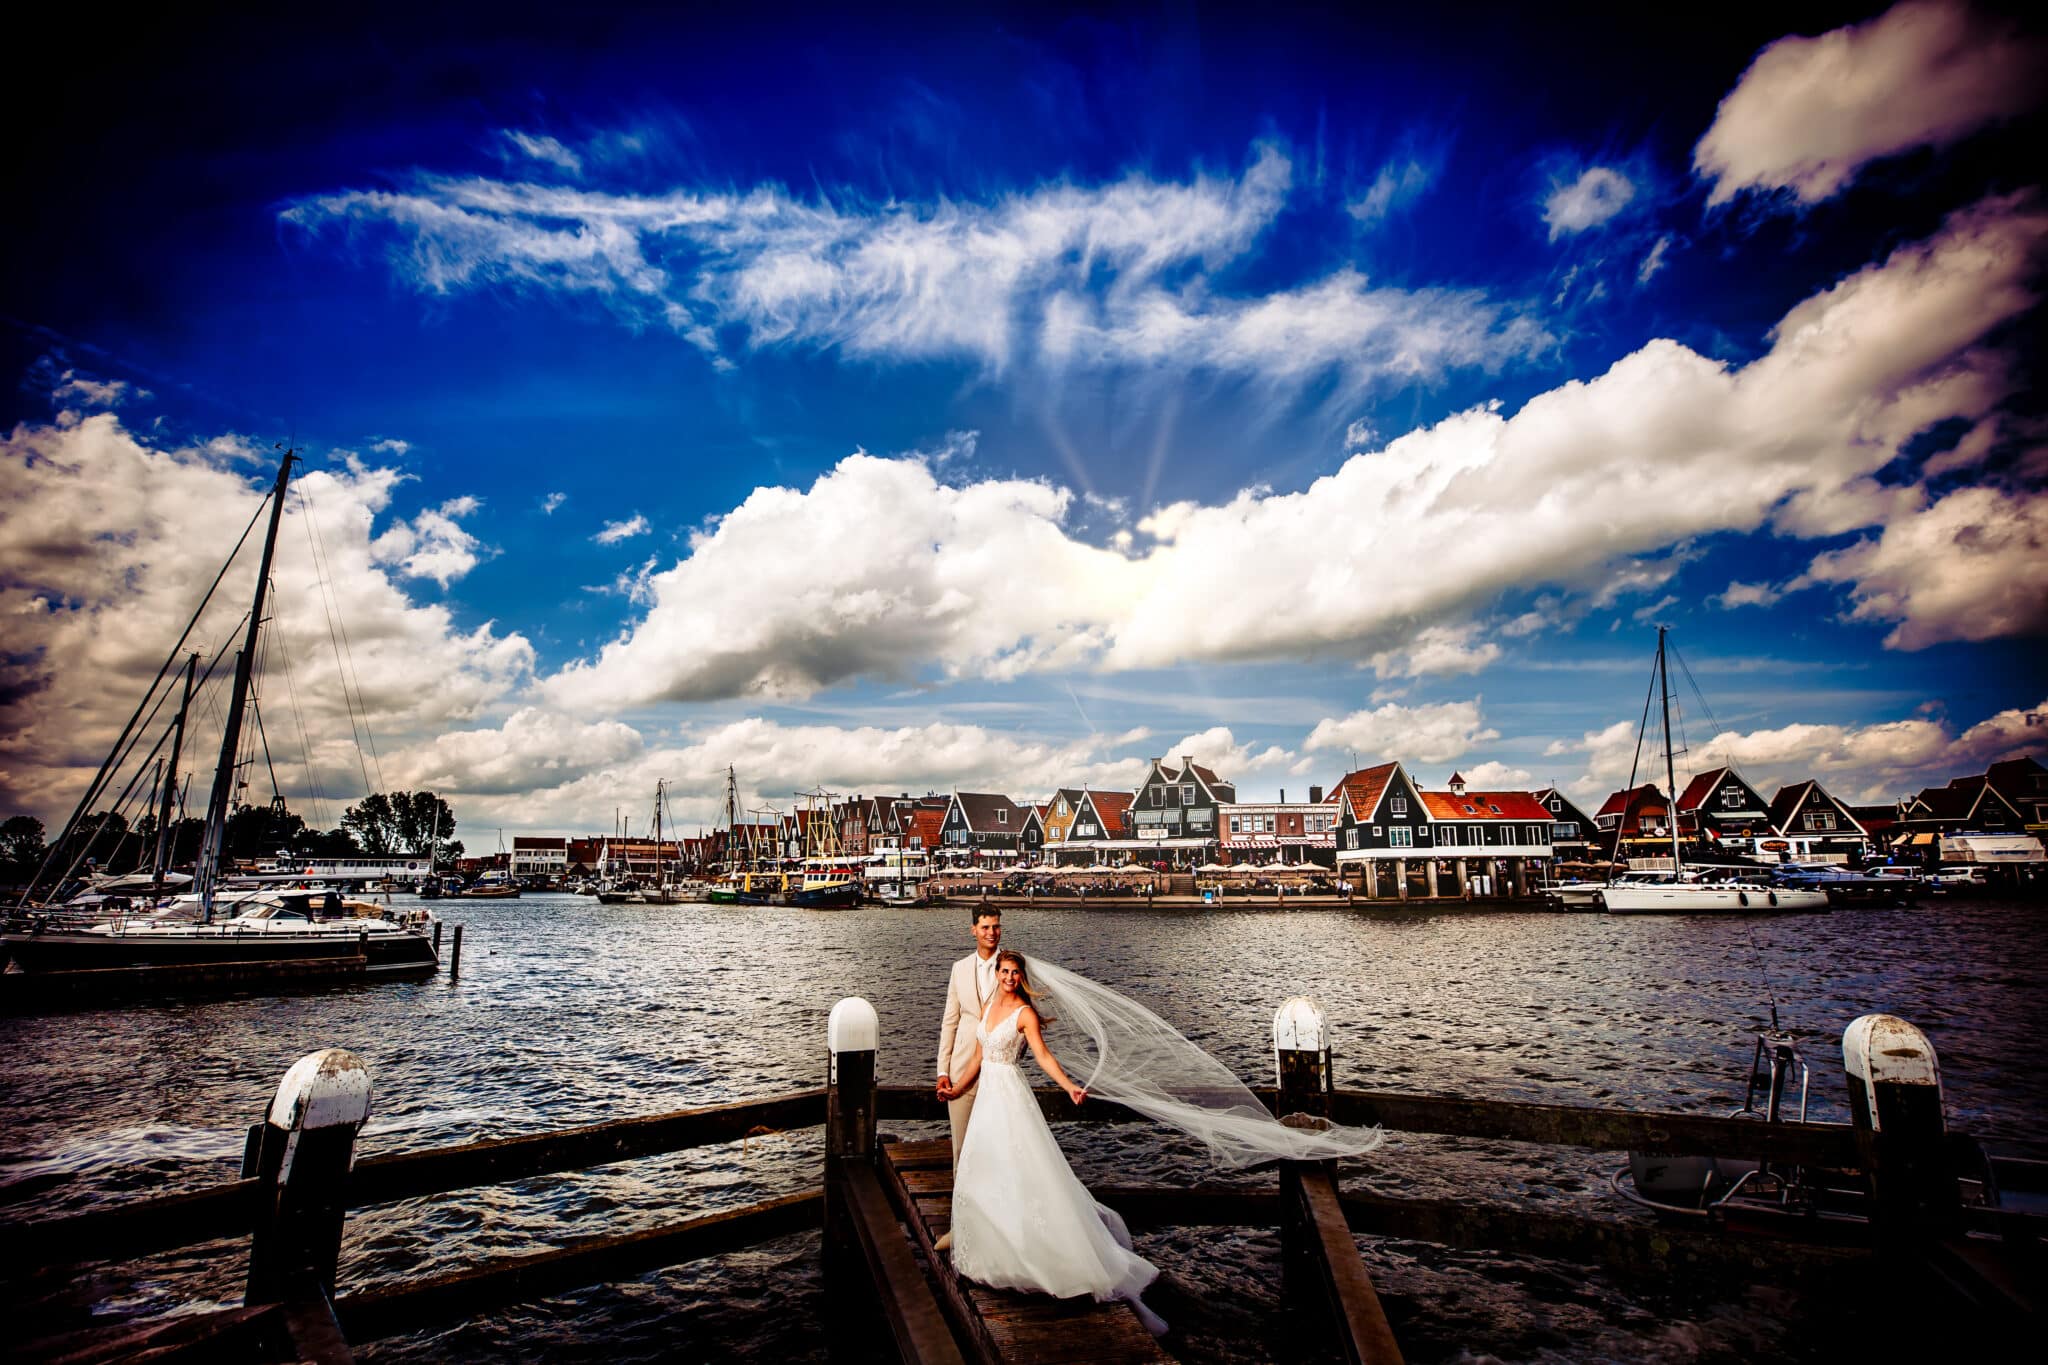 Het pasgetrouwde stel deelt een intiem moment op de Volendamse dijk, met een pittoresk uitzicht op de haven en de traditionele boten die rustig in het water dobberen.